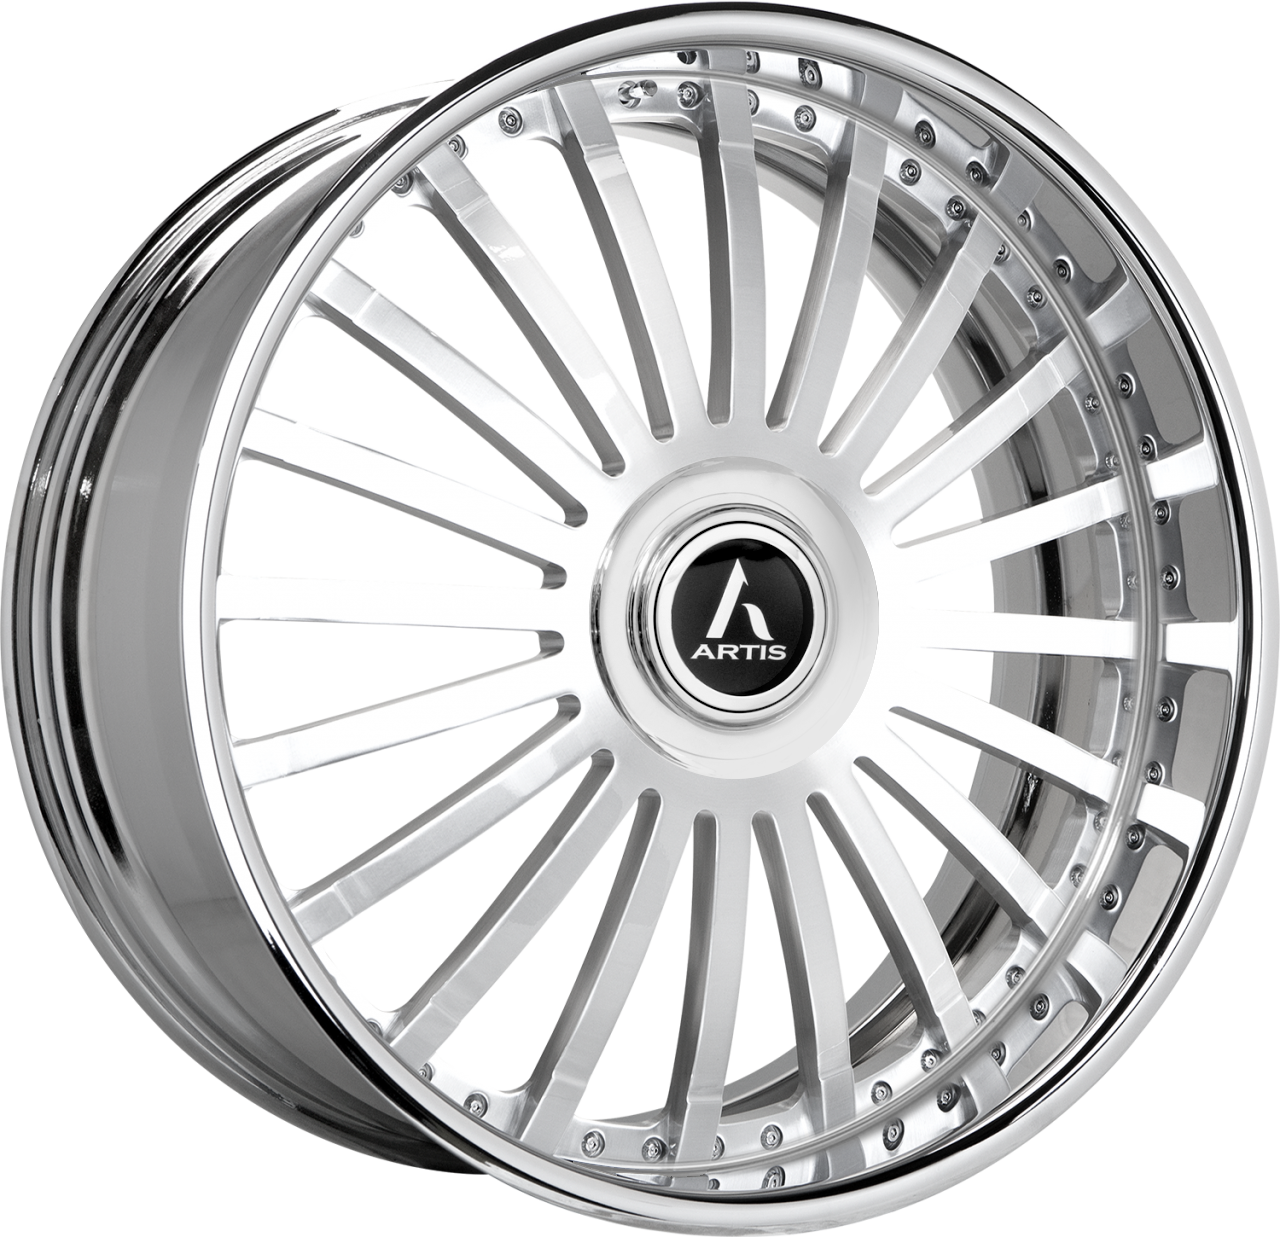 Artis Forged Coronado-M wheel with Brushed finish